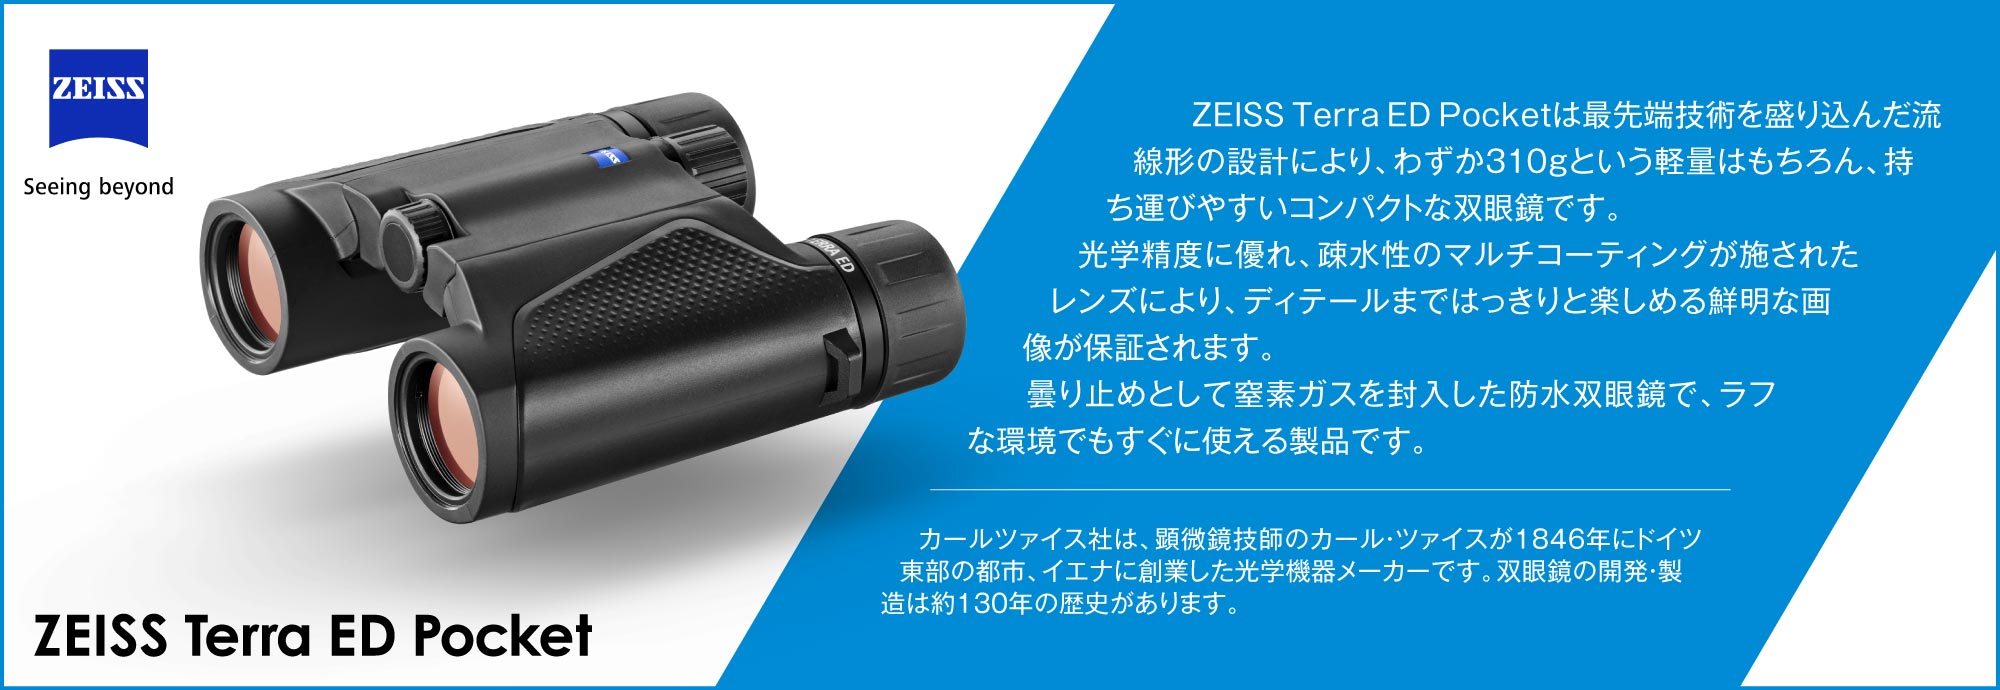 　ZEISS Terra ED Pocketは最先端技術を盛り込んだ流線形の設計により、わずか310gという軽量はもちろん、持ち運びやすいコンパクトな双眼鏡です。光学精度に優れ、疎水性のマルチコーティングが施されたレンズにより、ディテールまではっきりと楽しめる鮮明な画像が保証されます。　曇り止めとして窒素ガスを封入した防水双眼鏡で、ラフな環境でもすぐに使える製品です。